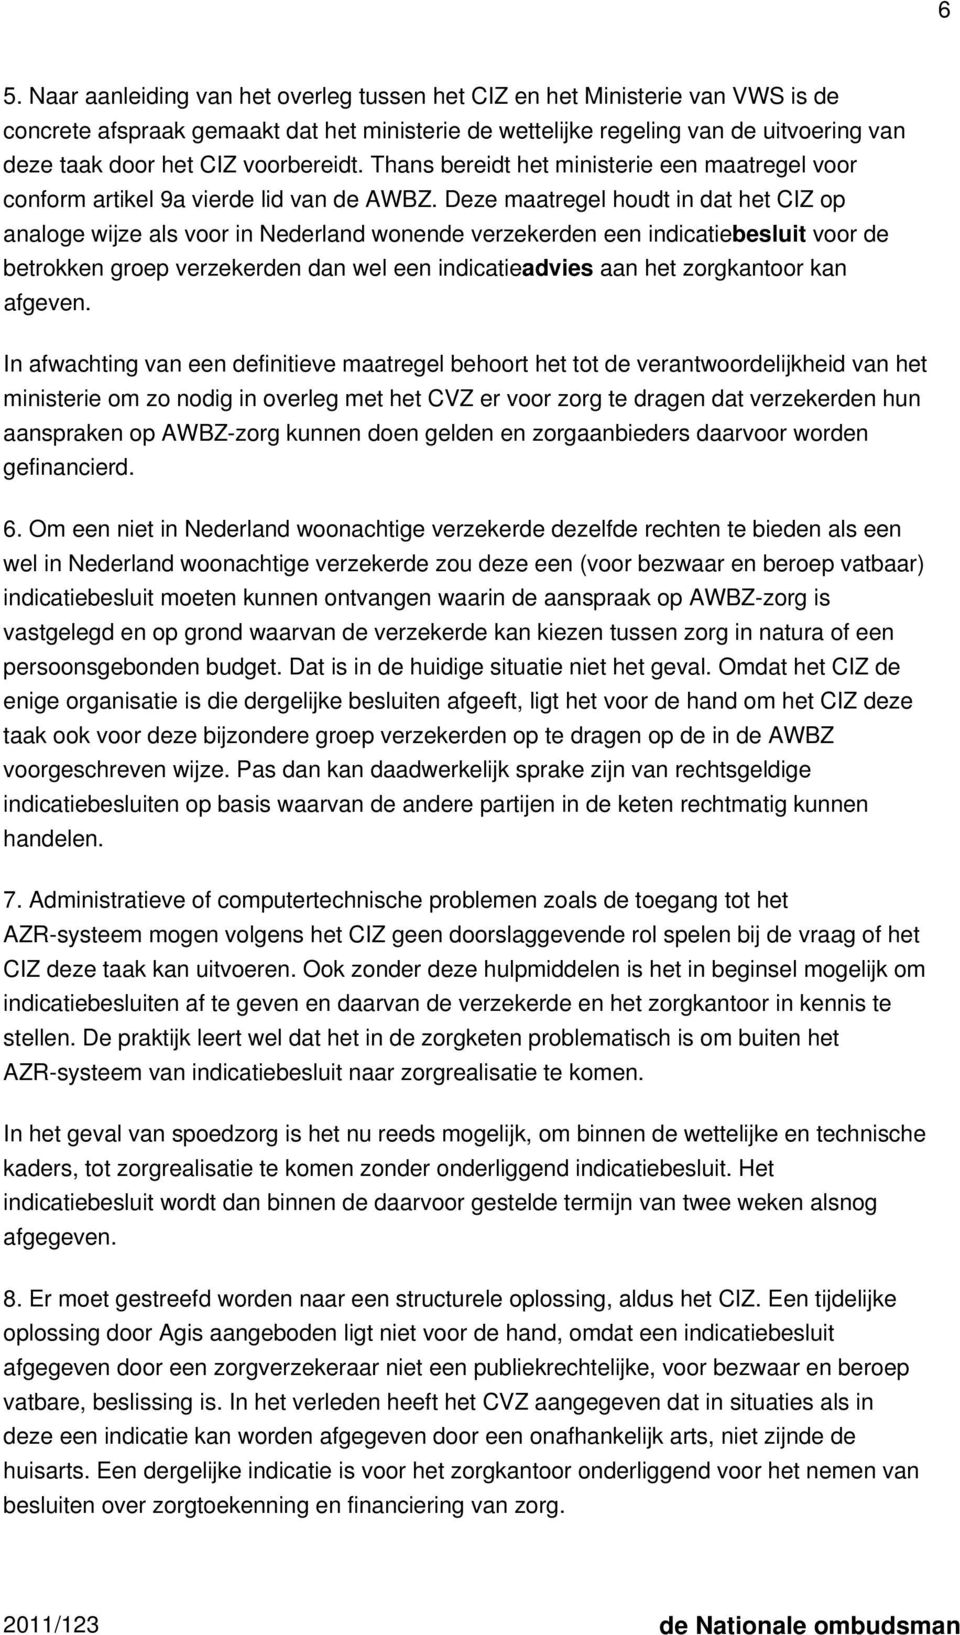 Deze maatregel houdt in dat het CIZ op analoge wijze als voor in Nederland wonende verzekerden een indicatiebesluit voor de betrokken groep verzekerden dan wel een indicatieadvies aan het zorgkantoor